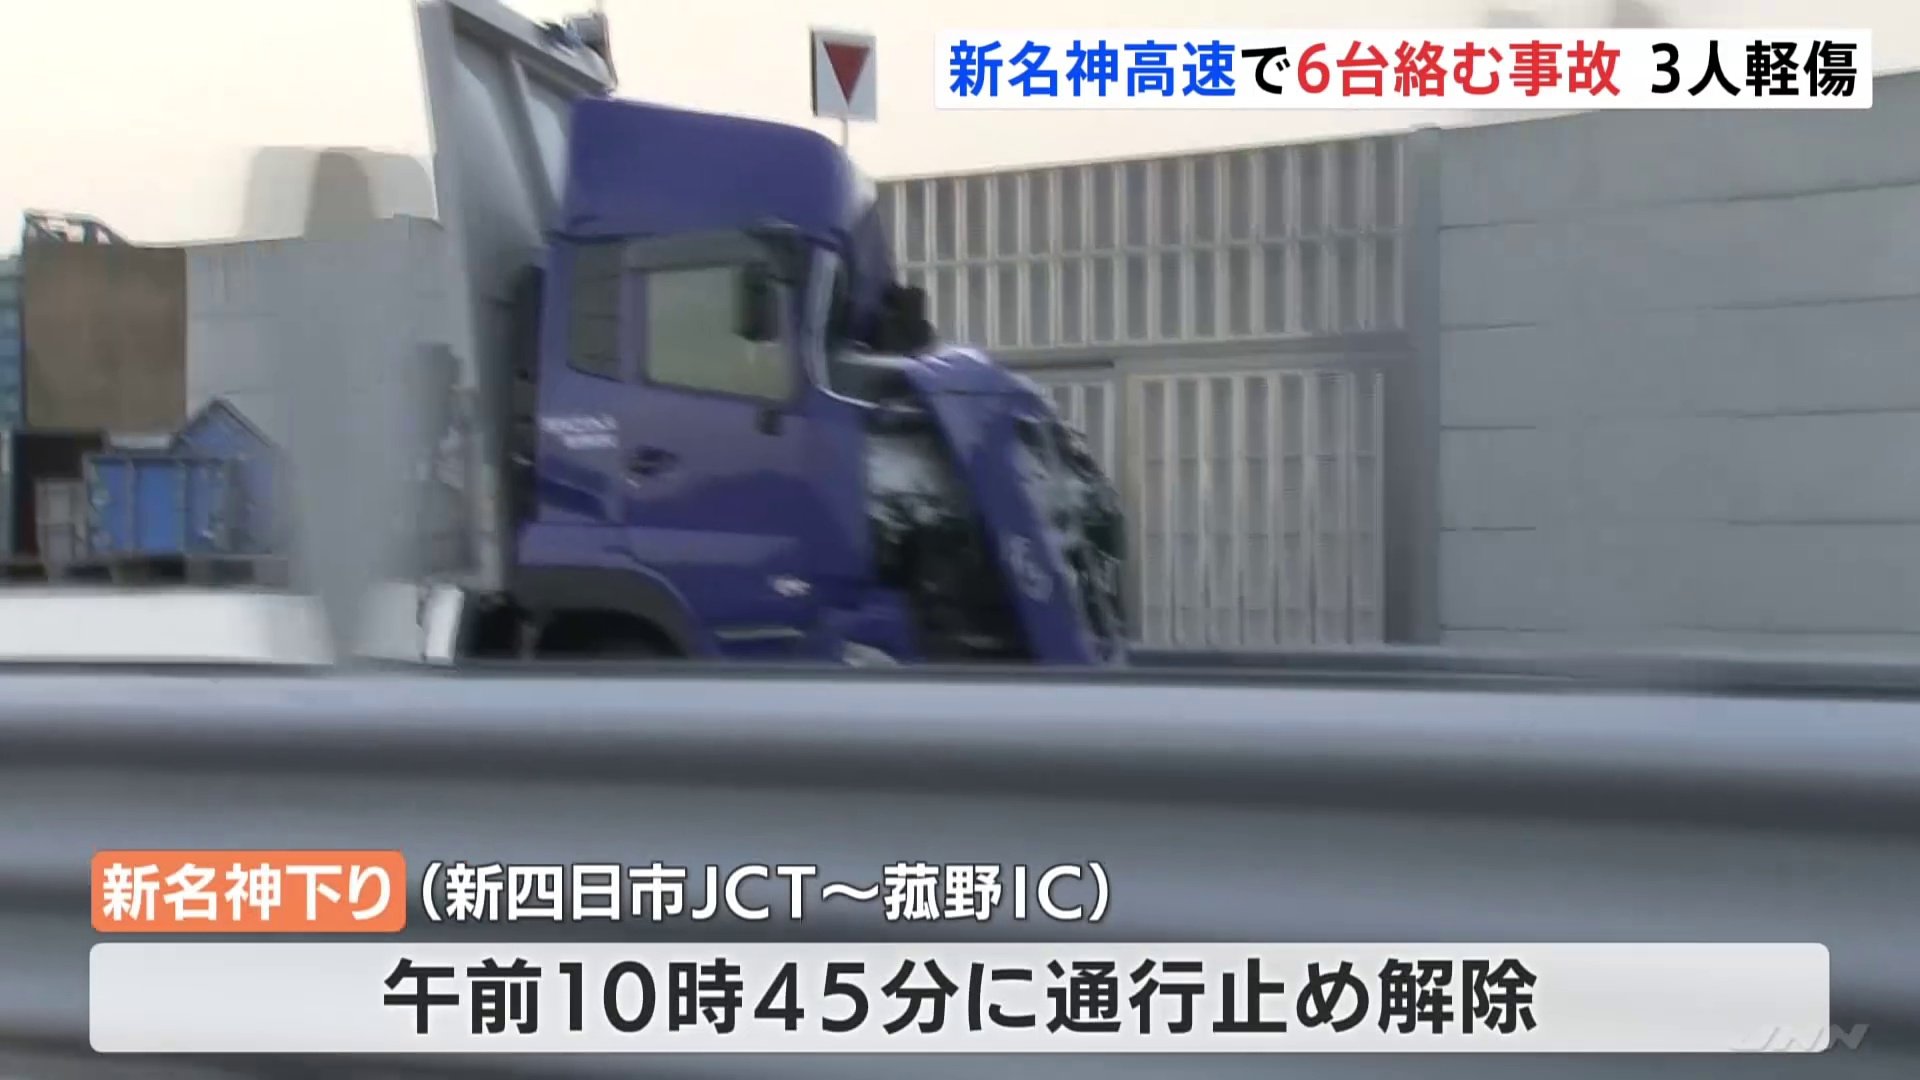 新名神高速道路で大型トラックなど6台絡む事故 故障したトラックに別のトラック衝突 男性3人軽傷 Tbs News Dig